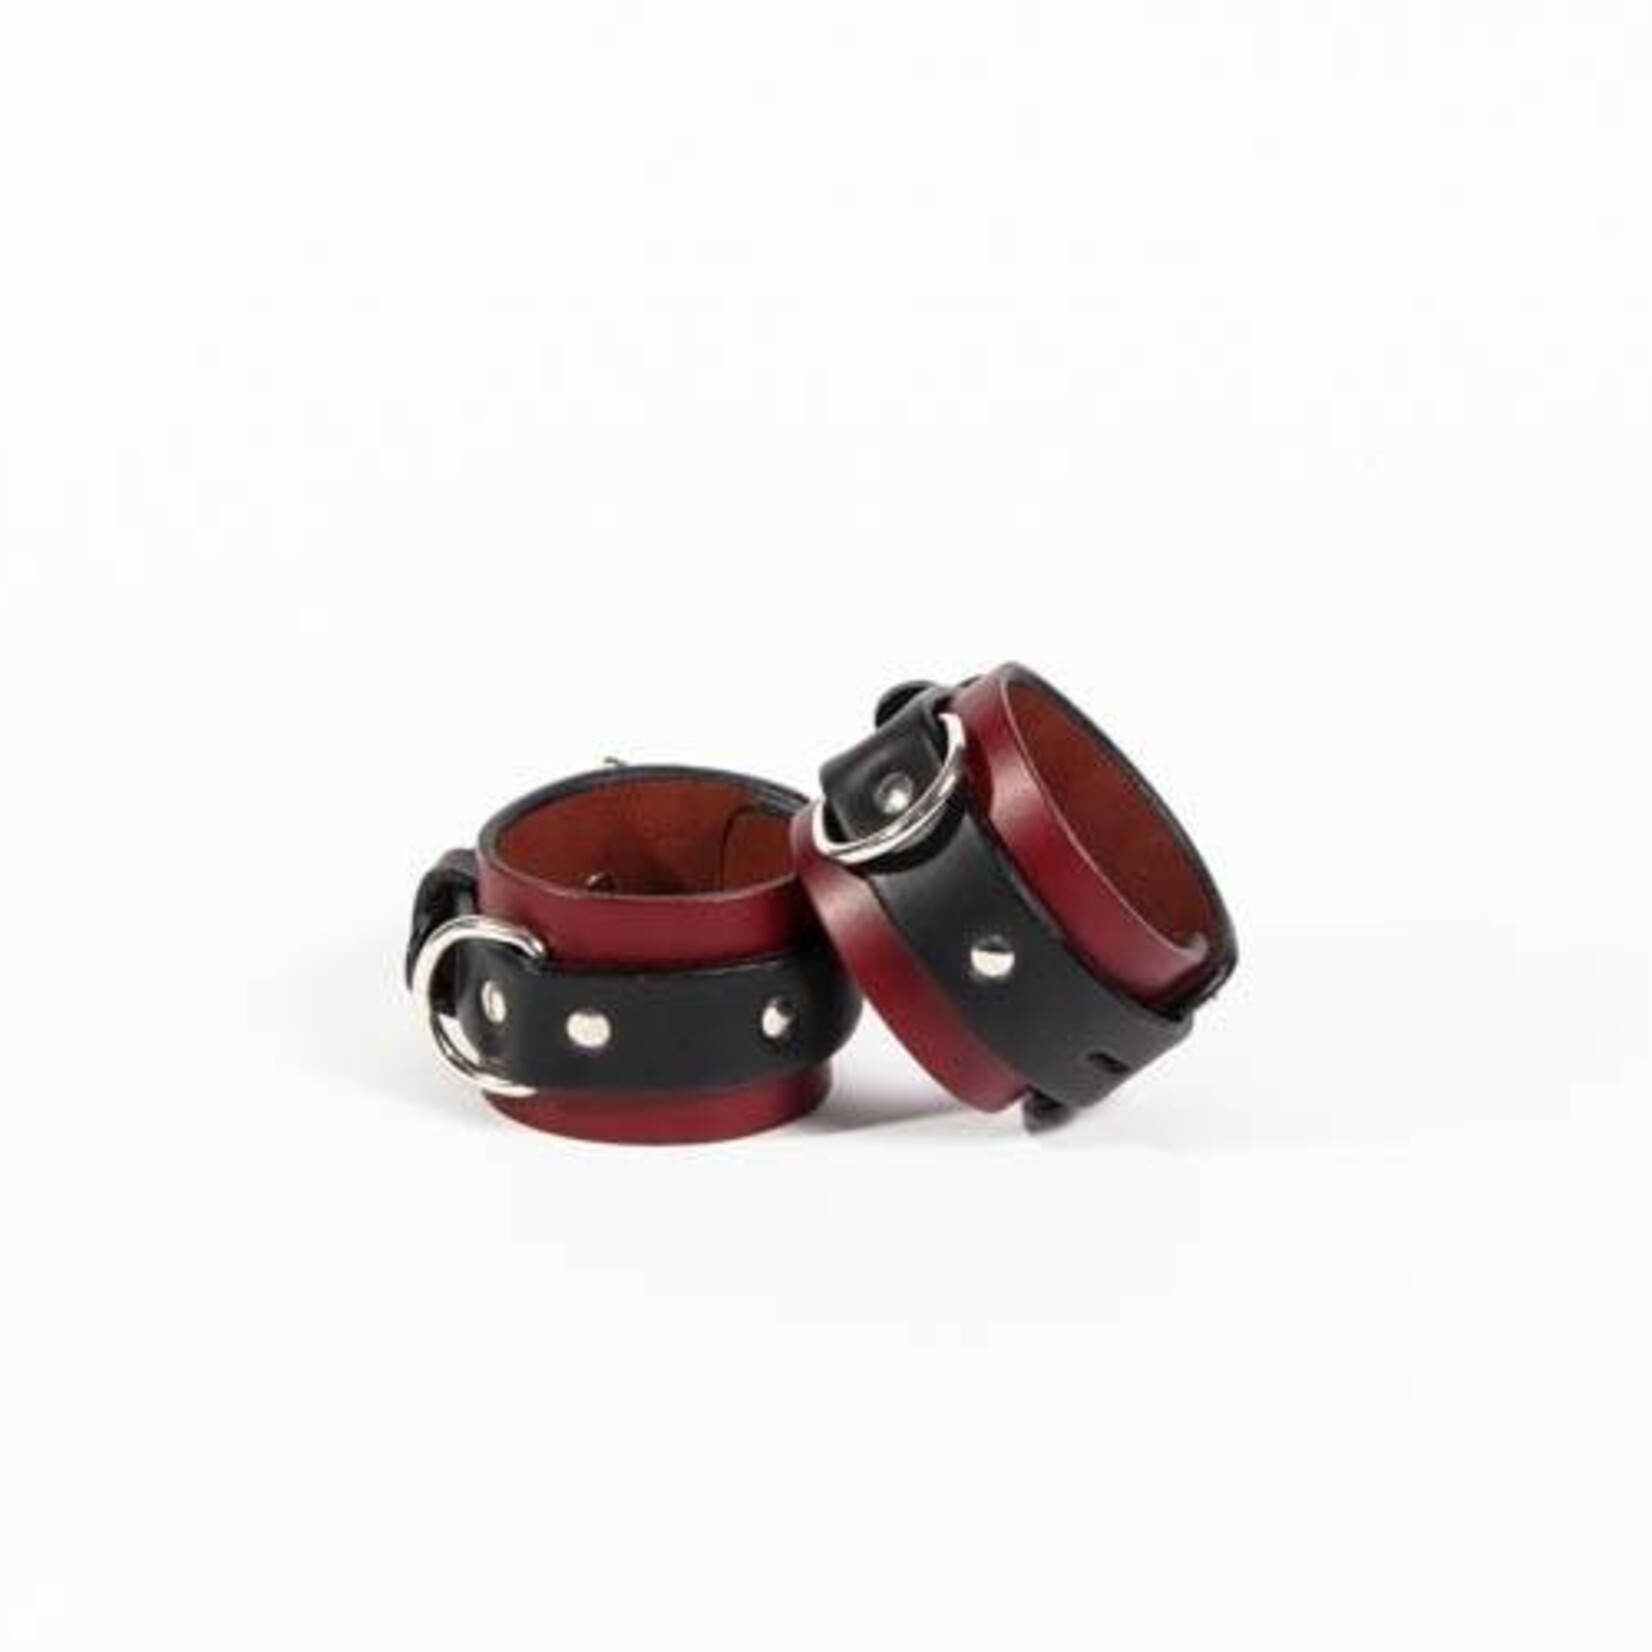 Sinvention Sinvention Classic Leather Cuffs - Medium